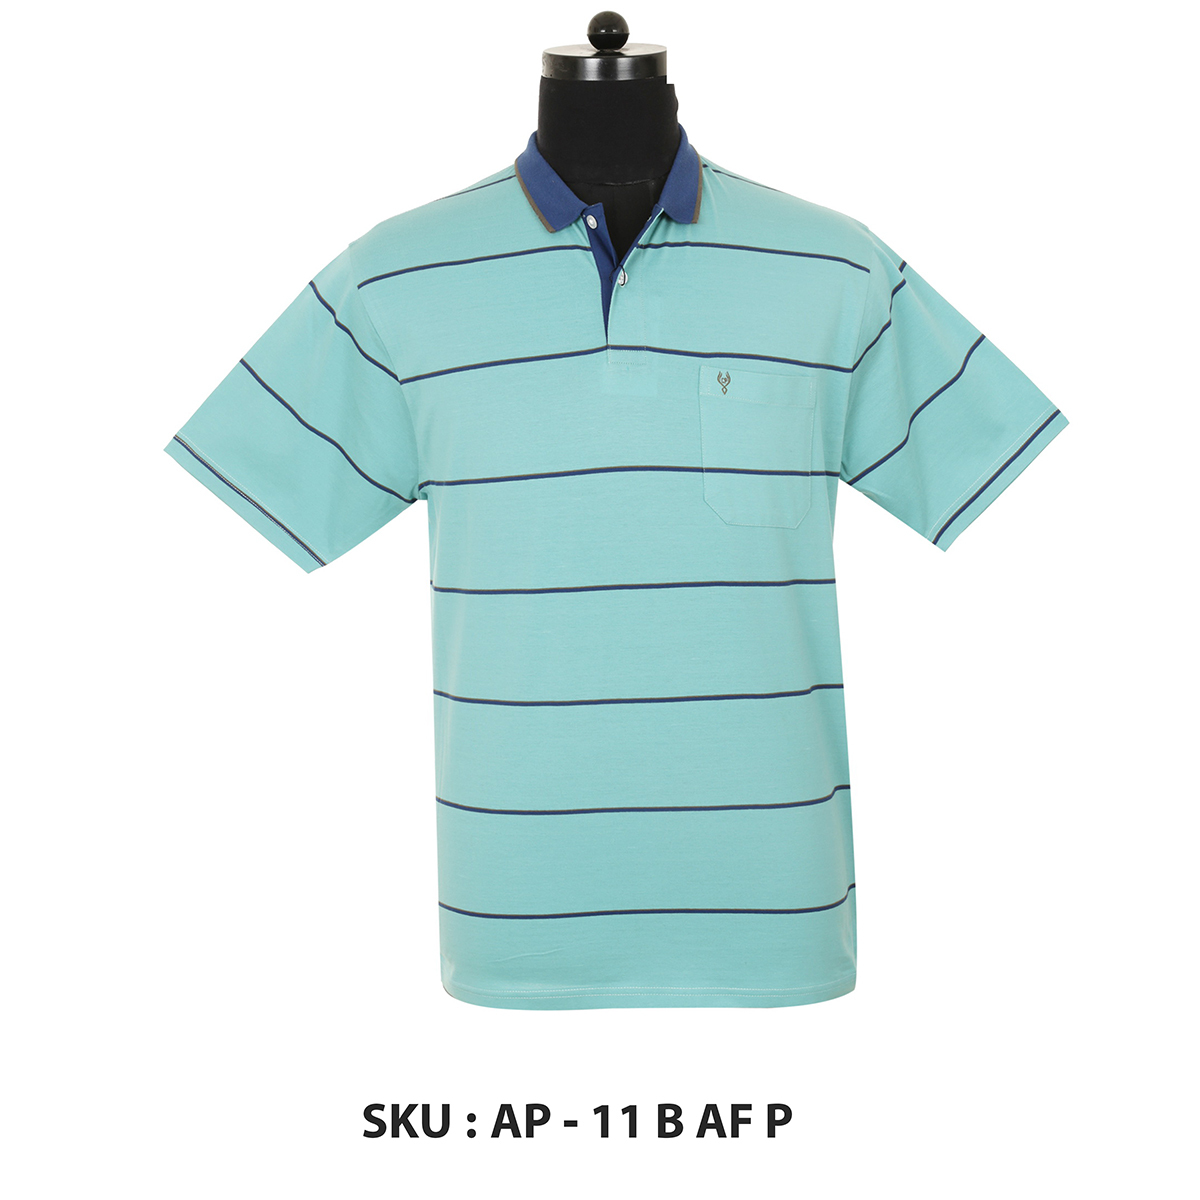 Classic Polo Mens T Shirt Ap - 11 B Af P Aqua XXL